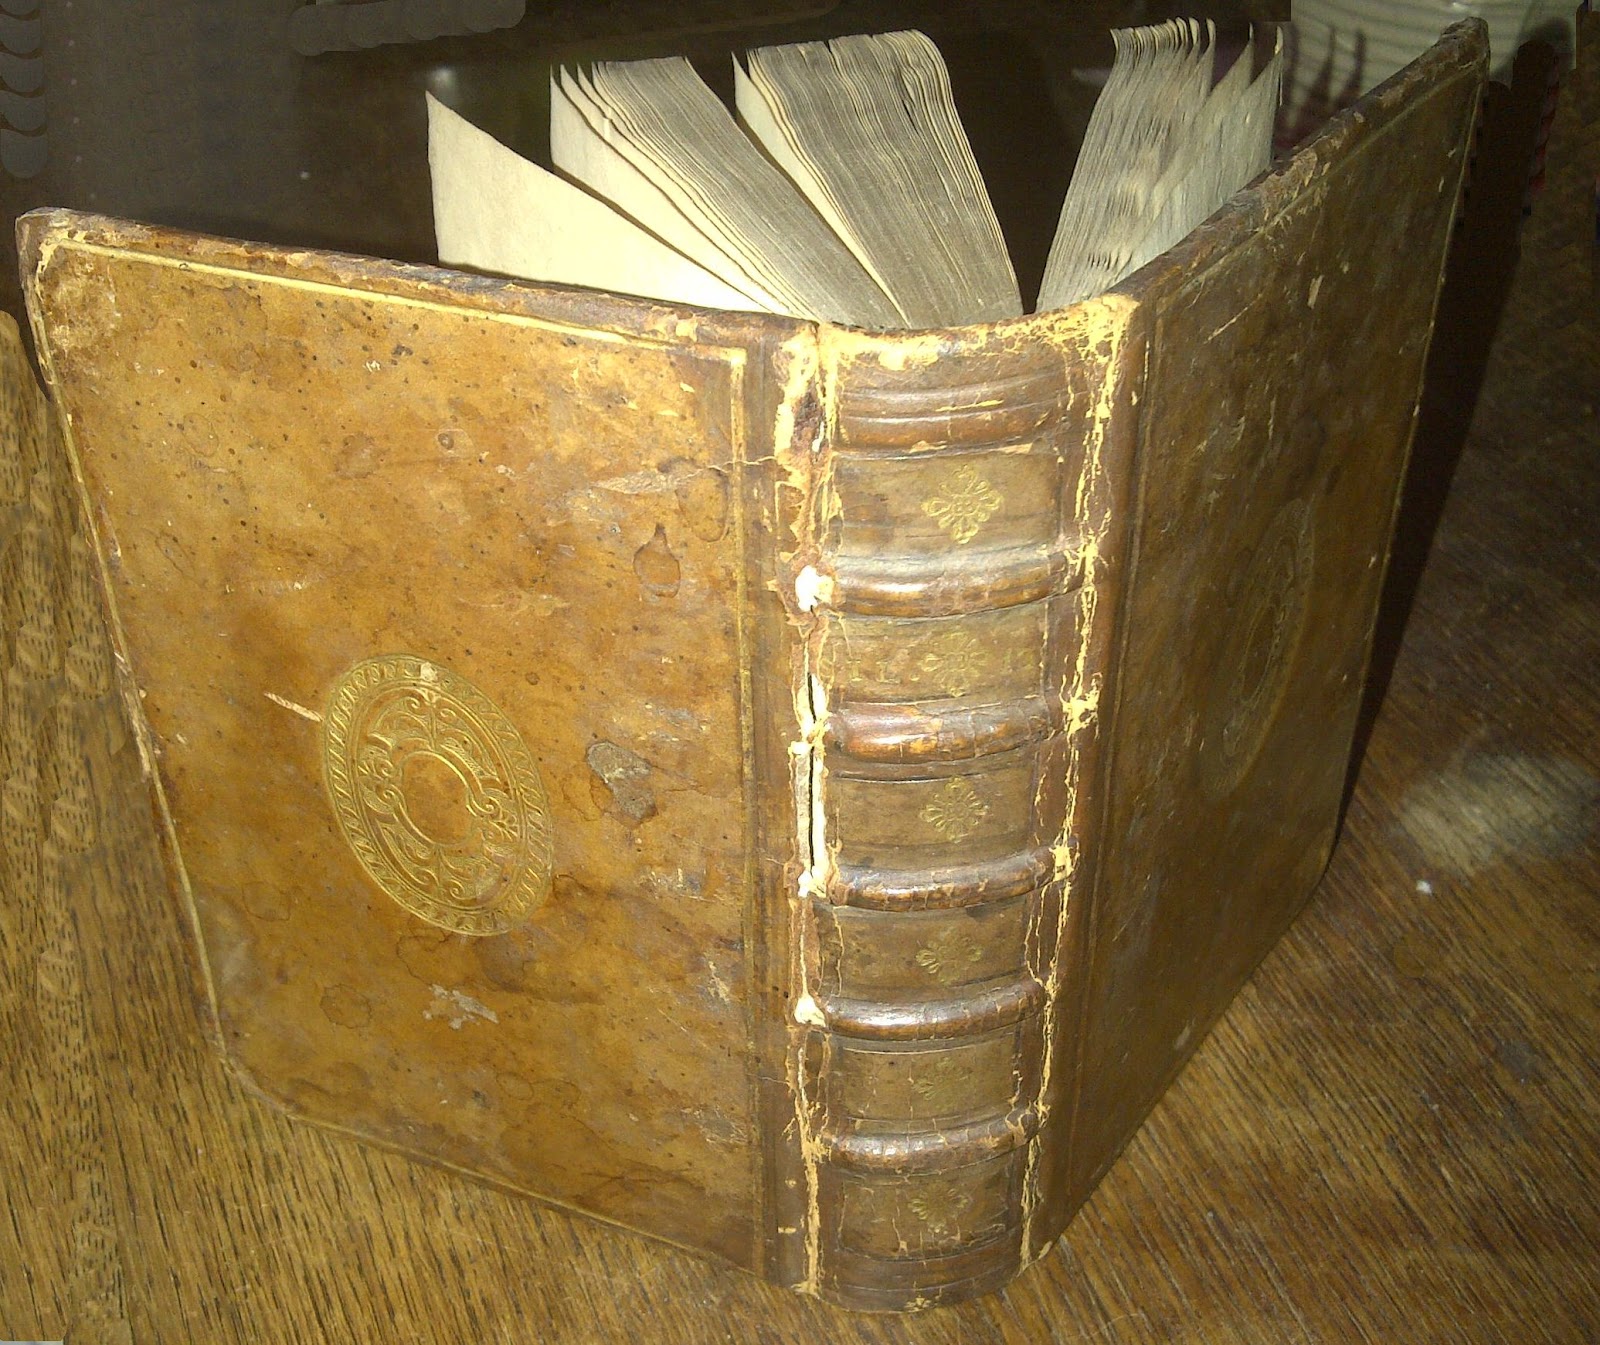 Zoeken boeken: 212 - Op weg naar een incunabel: mijn boek uit 1522